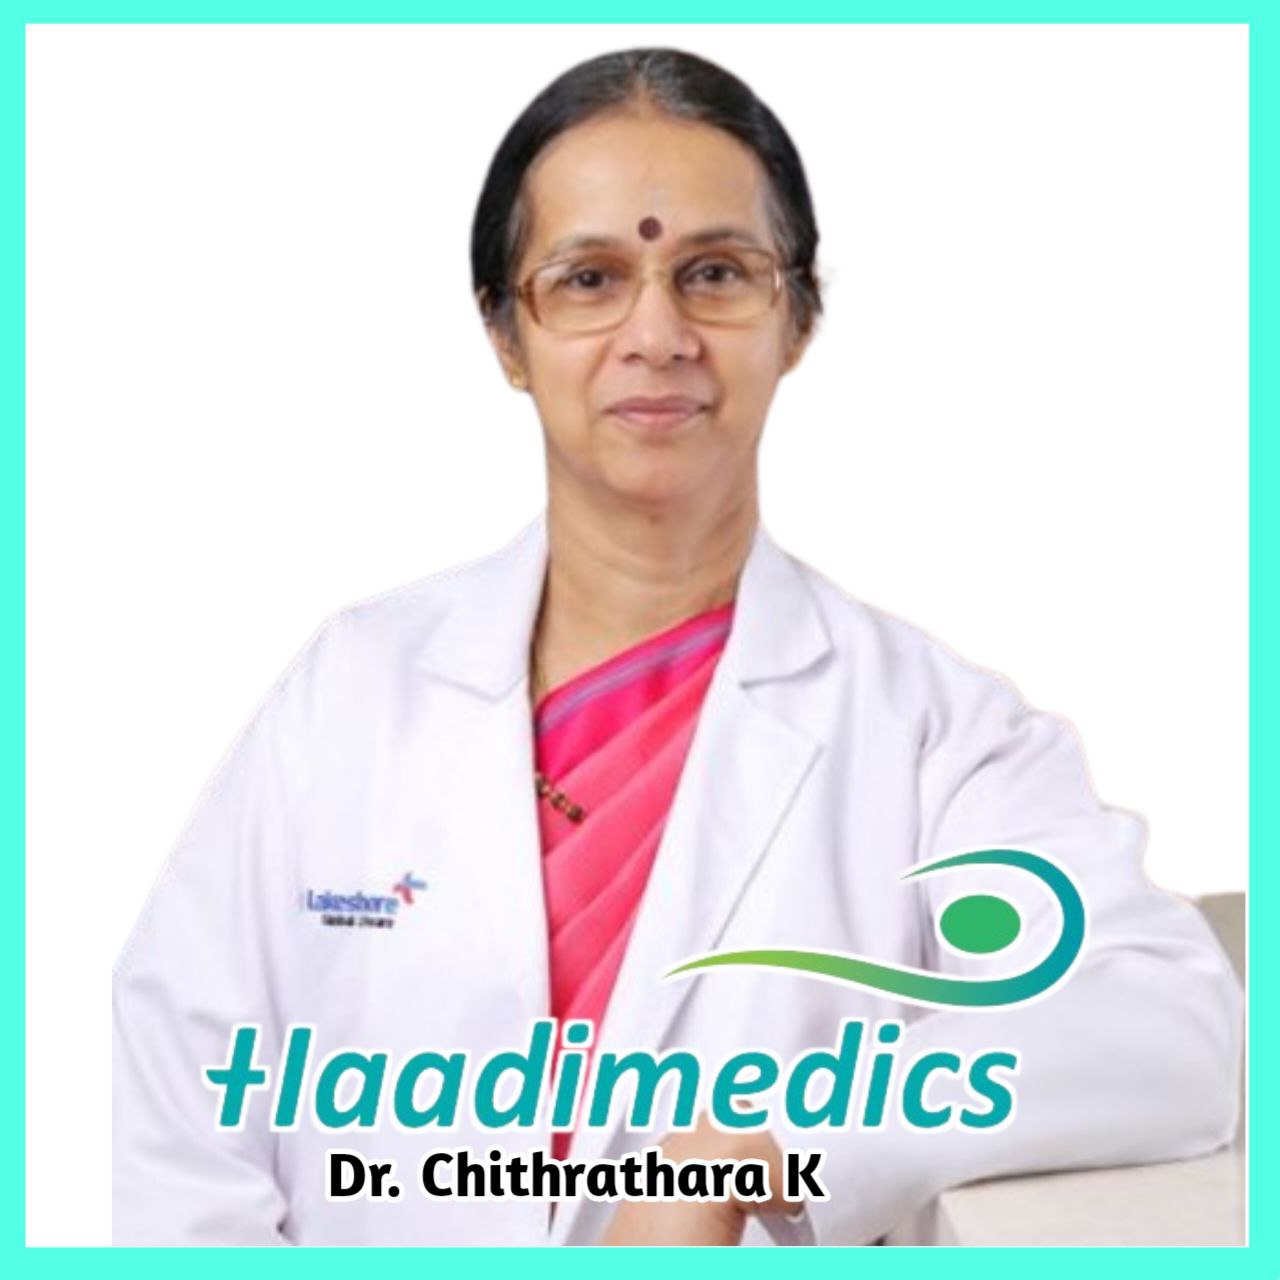 Dr. Chitrathara K